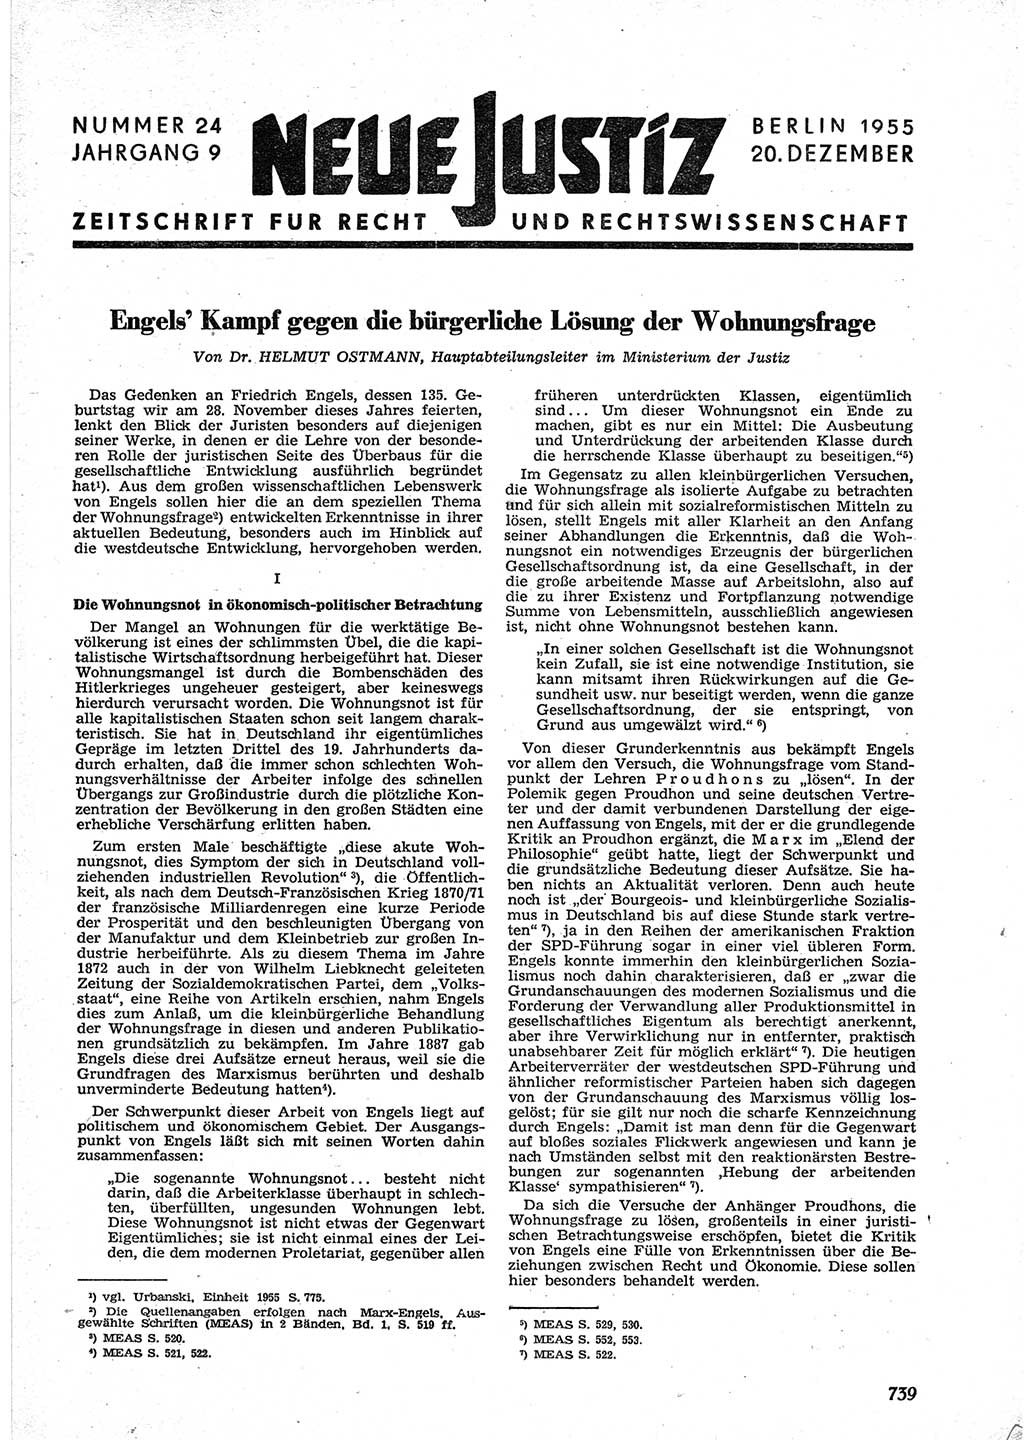 Neue Justiz (NJ), Zeitschrift für Recht und Rechtswissenschaft [Deutsche Demokratische Republik (DDR)], 9. Jahrgang 1955, Seite 739 (NJ DDR 1955, S. 739)